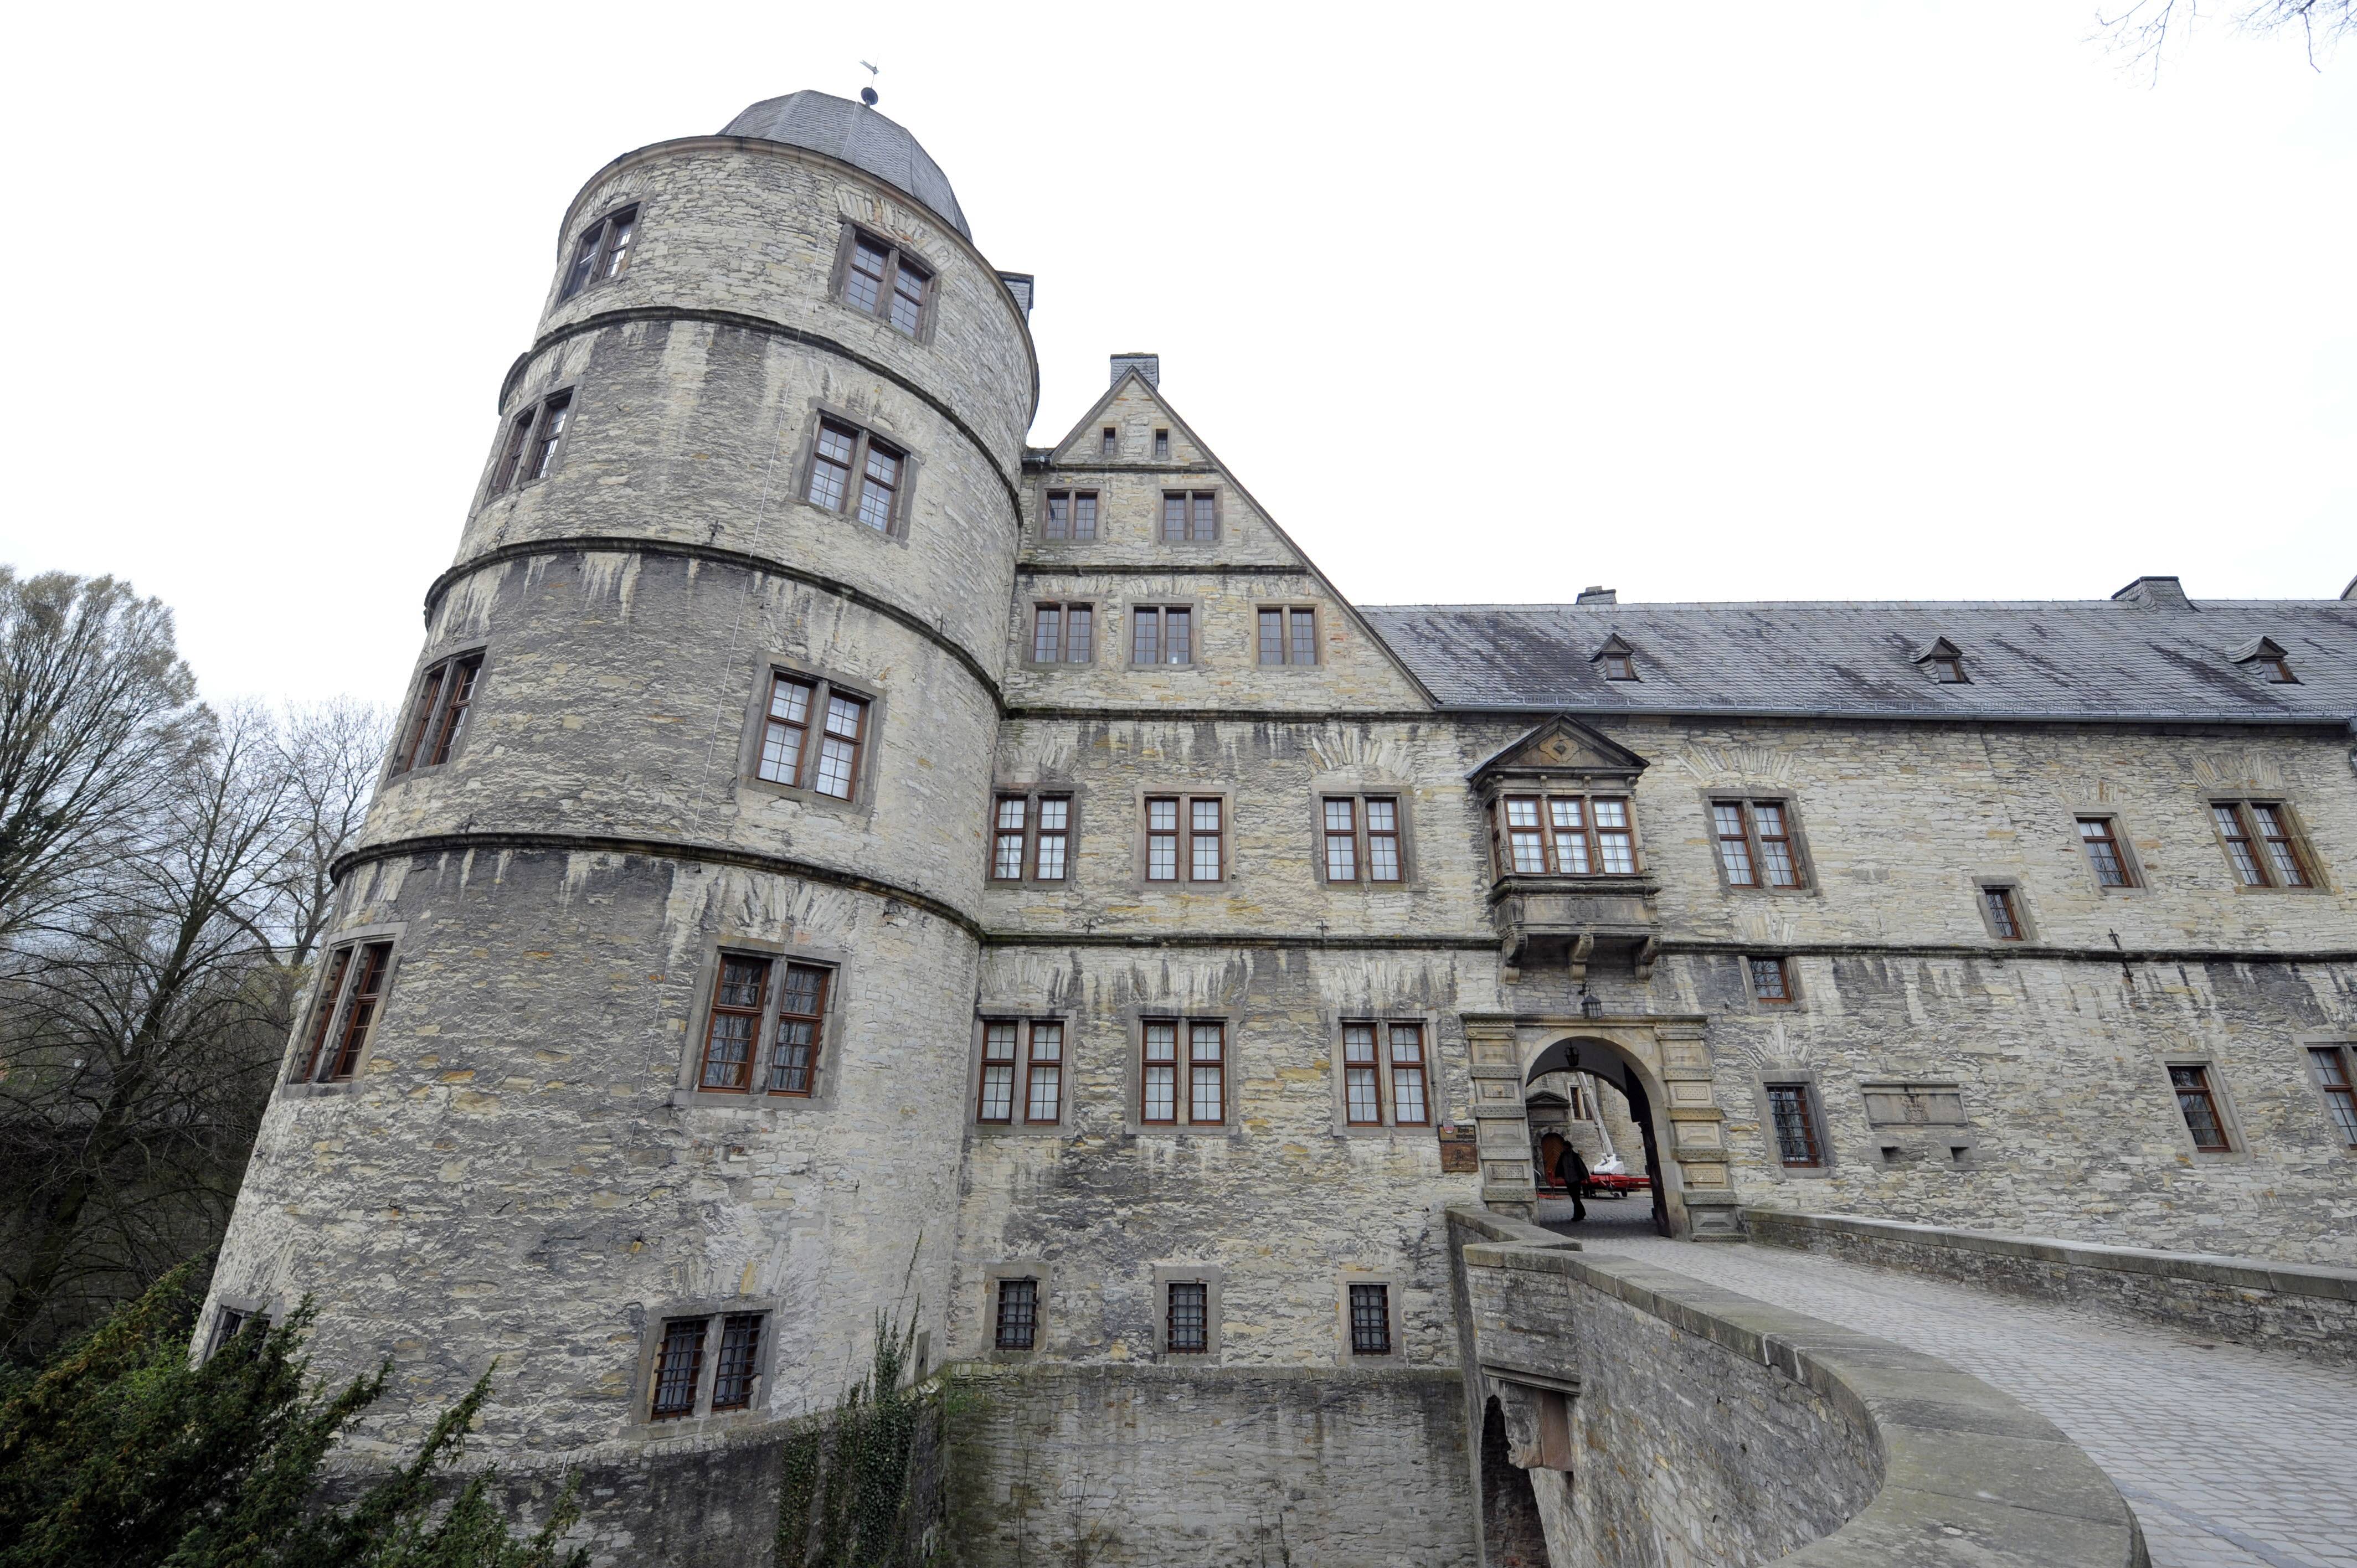 Самый таинственный и мистический замок германии – вевельсбург